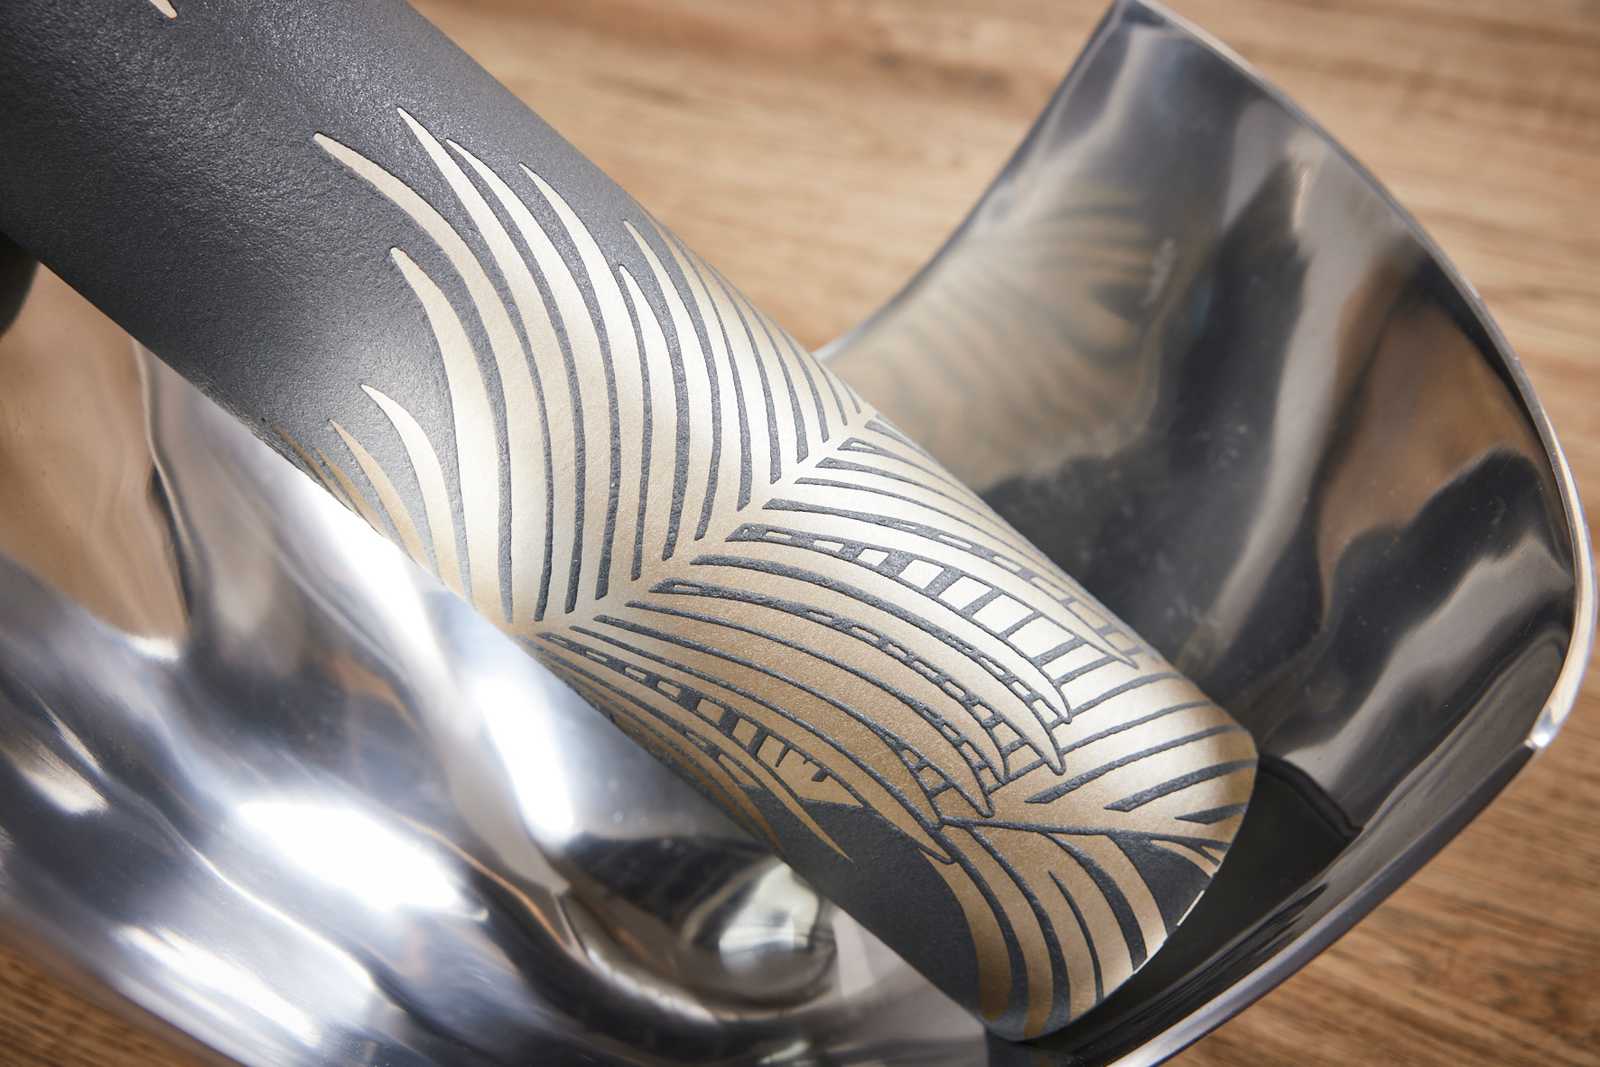             Feuilles de palmier papier peint gris & or avec structure & effet métallique
        